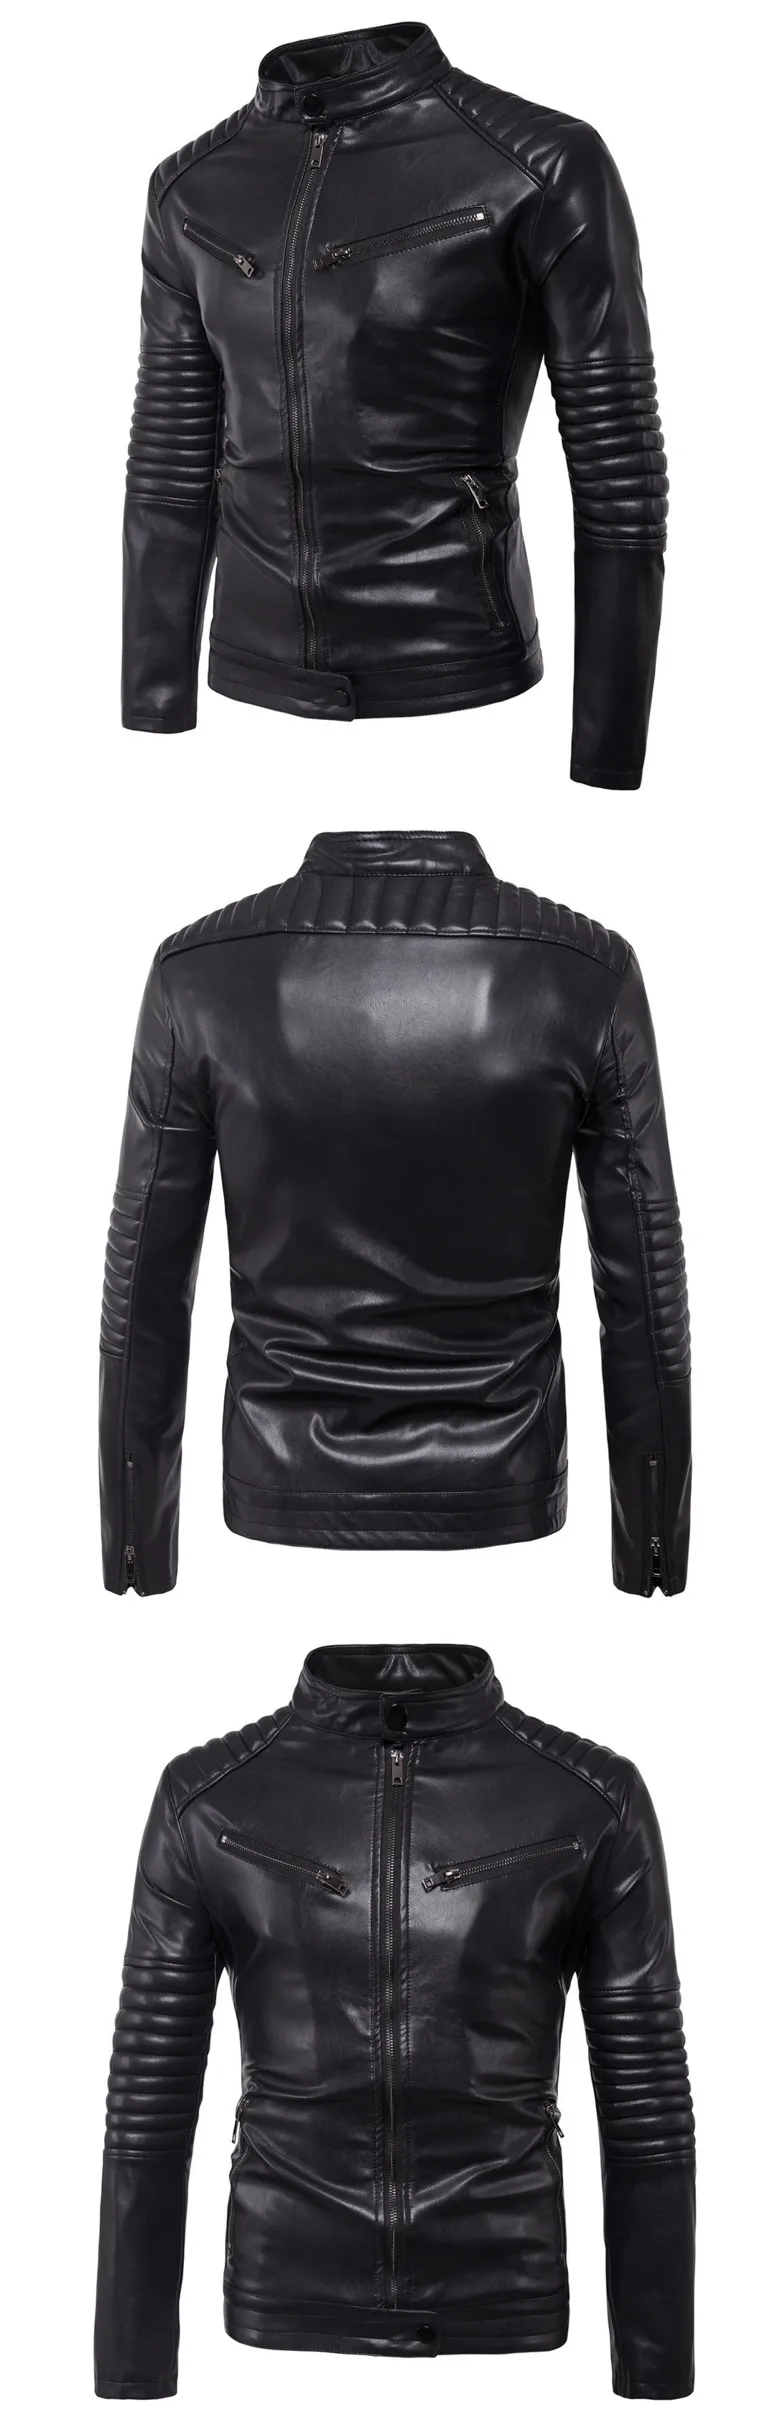 Дропшиппинг кожаная куртка для мужчин осень Slim fit искусственная кожа мотоциклетная кожаная куртка-бомбер пальто большой размер 5XL